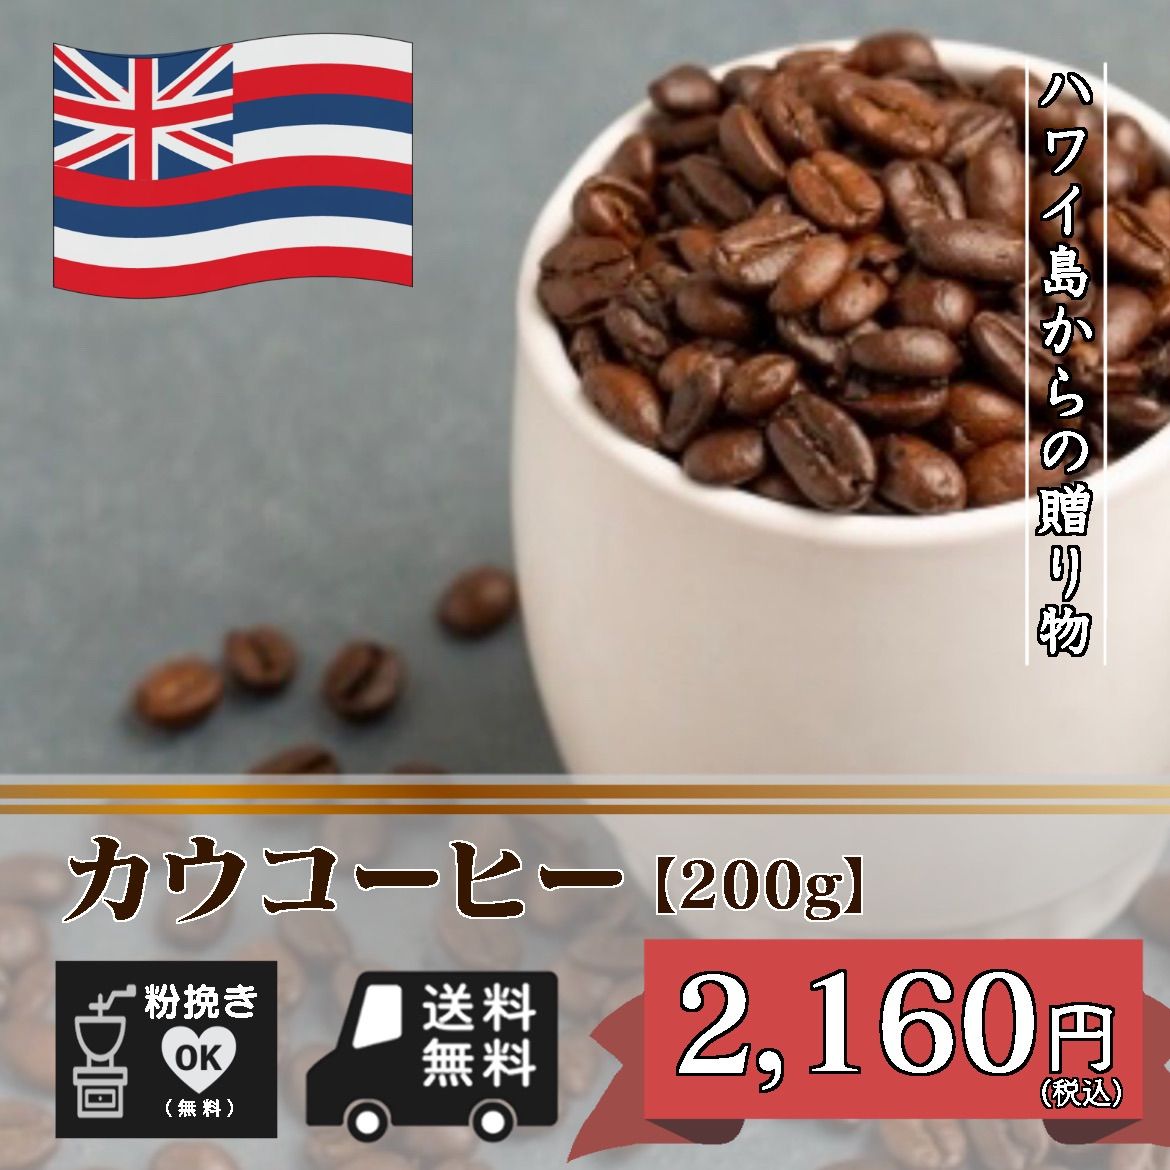 カウコーヒー ハワイ産珈琲豆 【200g】-0